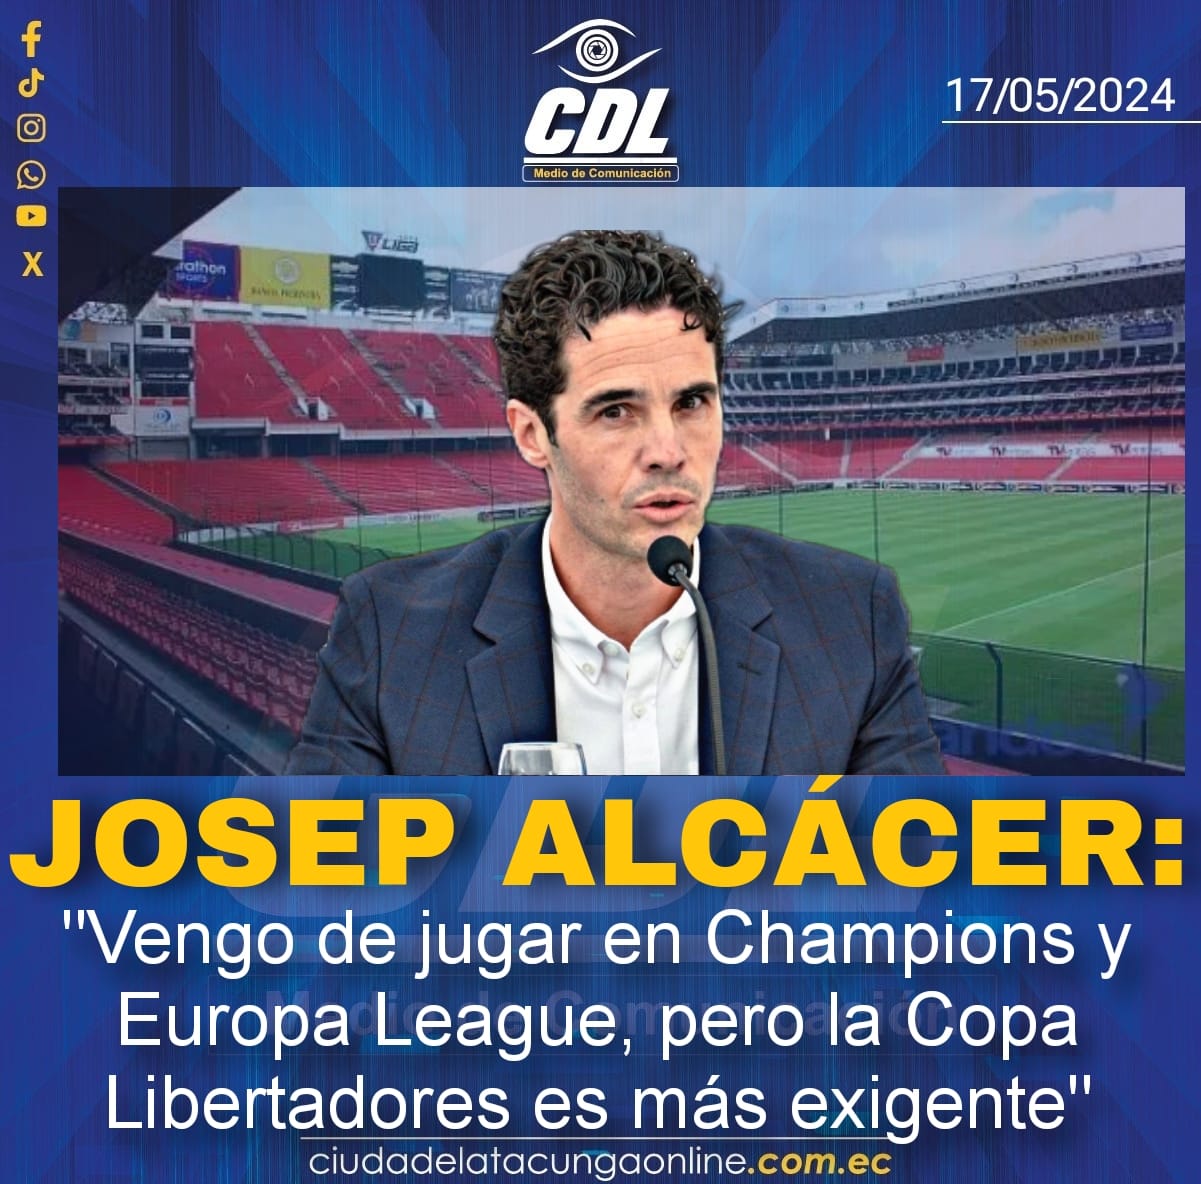 Josep Alcácer: “Vengo de jugar en Champions y Europa League, pero la Copa Libertadores es más exigente”